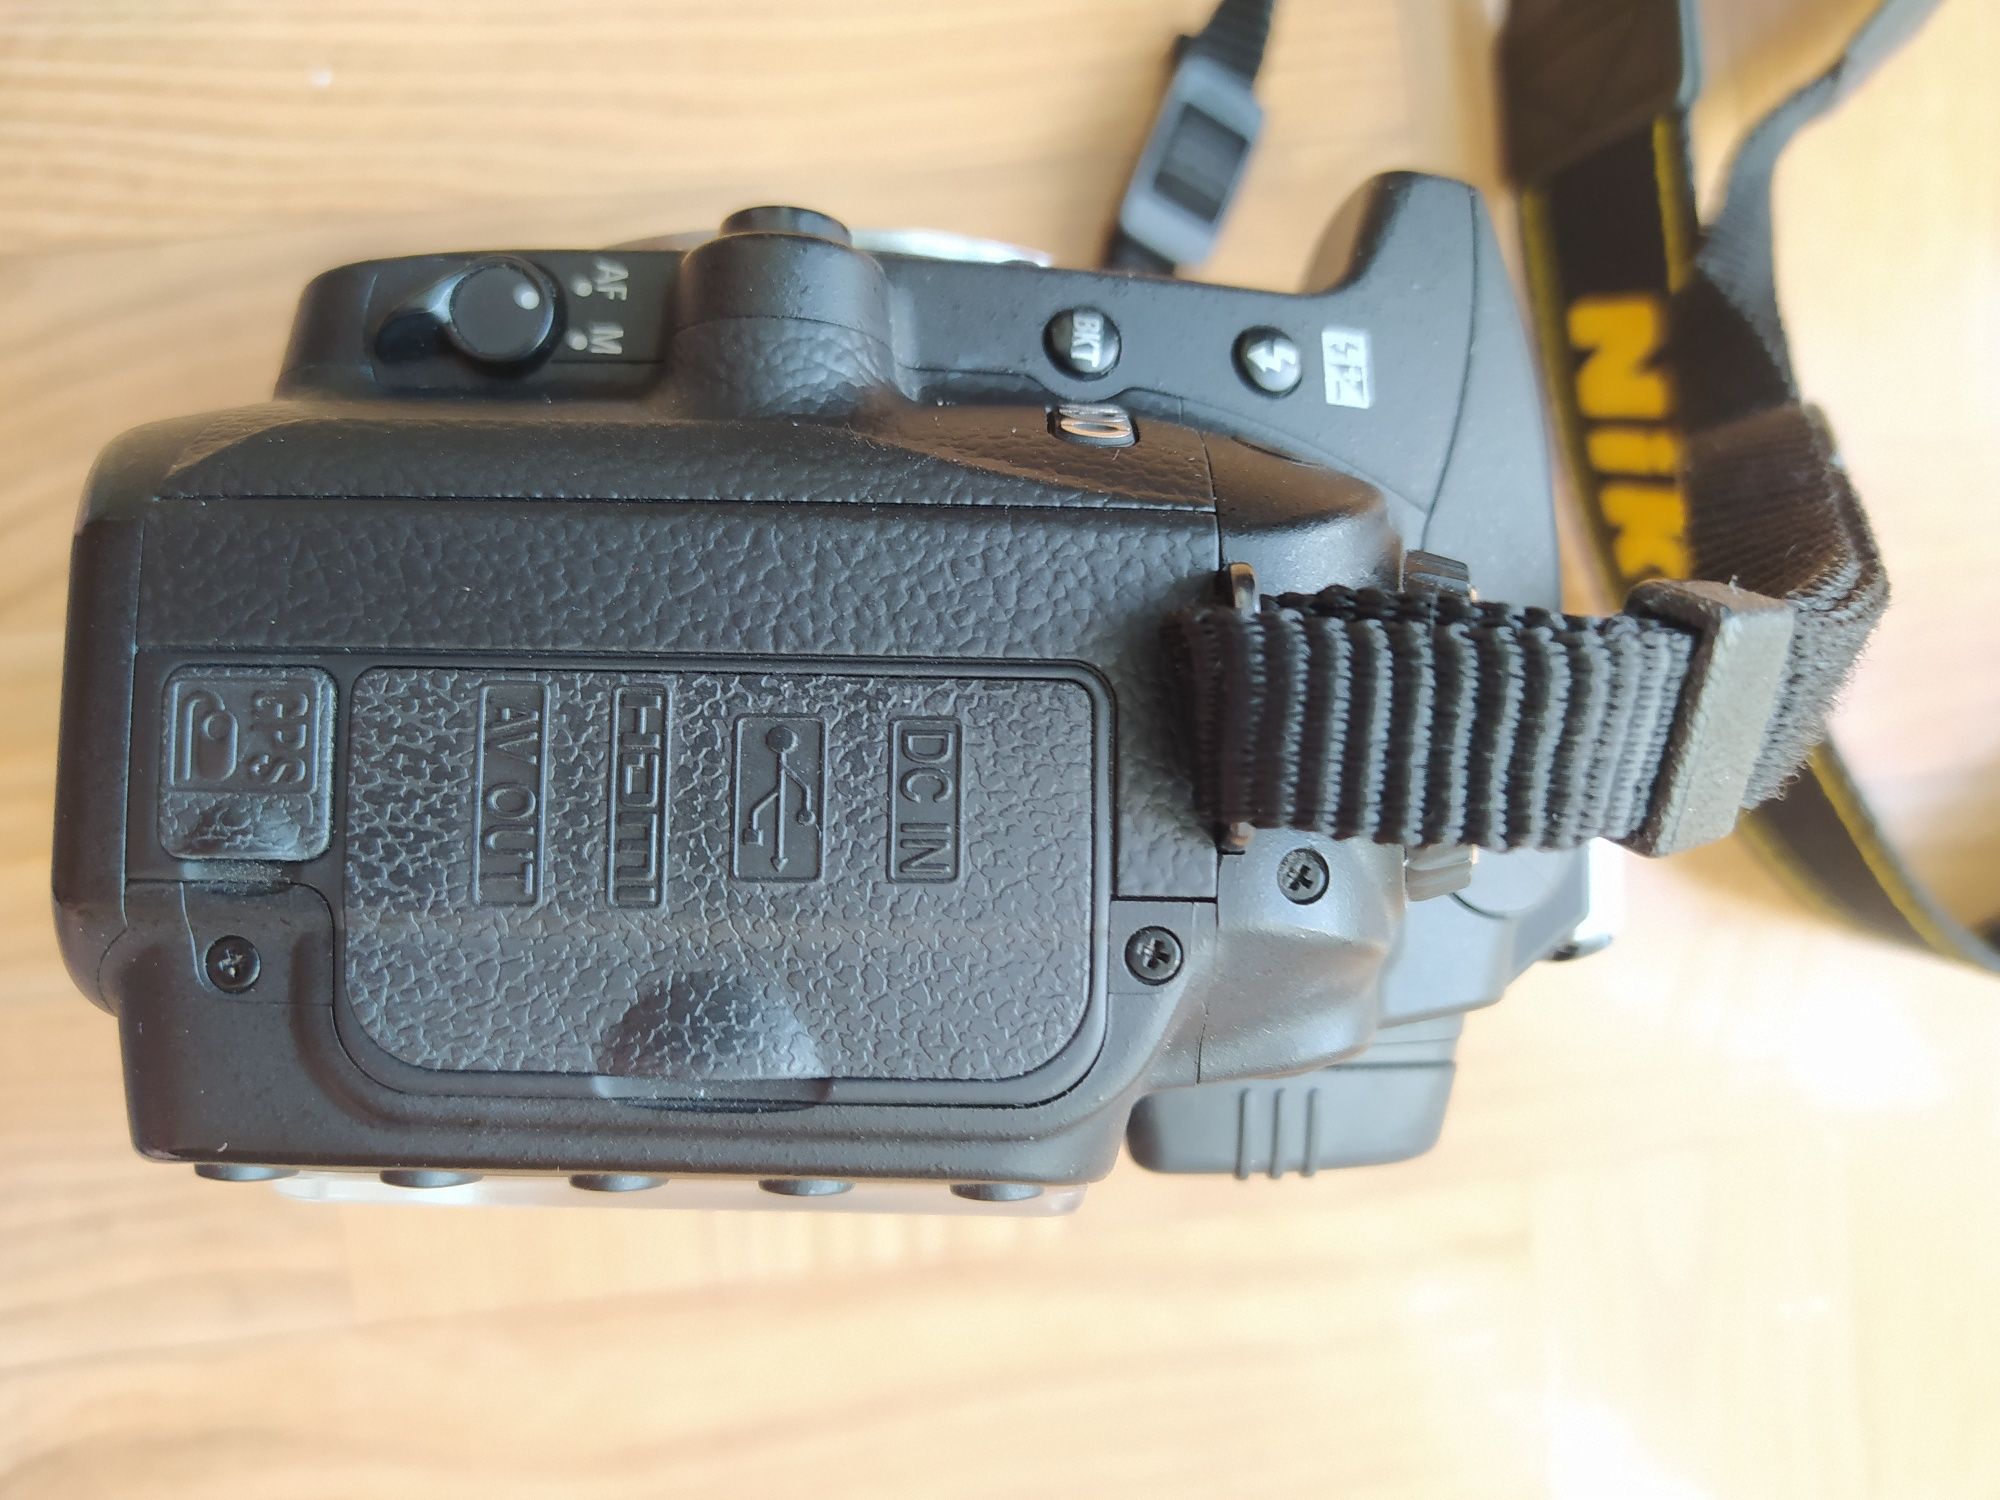 Aparat fotograficzny Nikon d90 z minimalnym przebiegiem